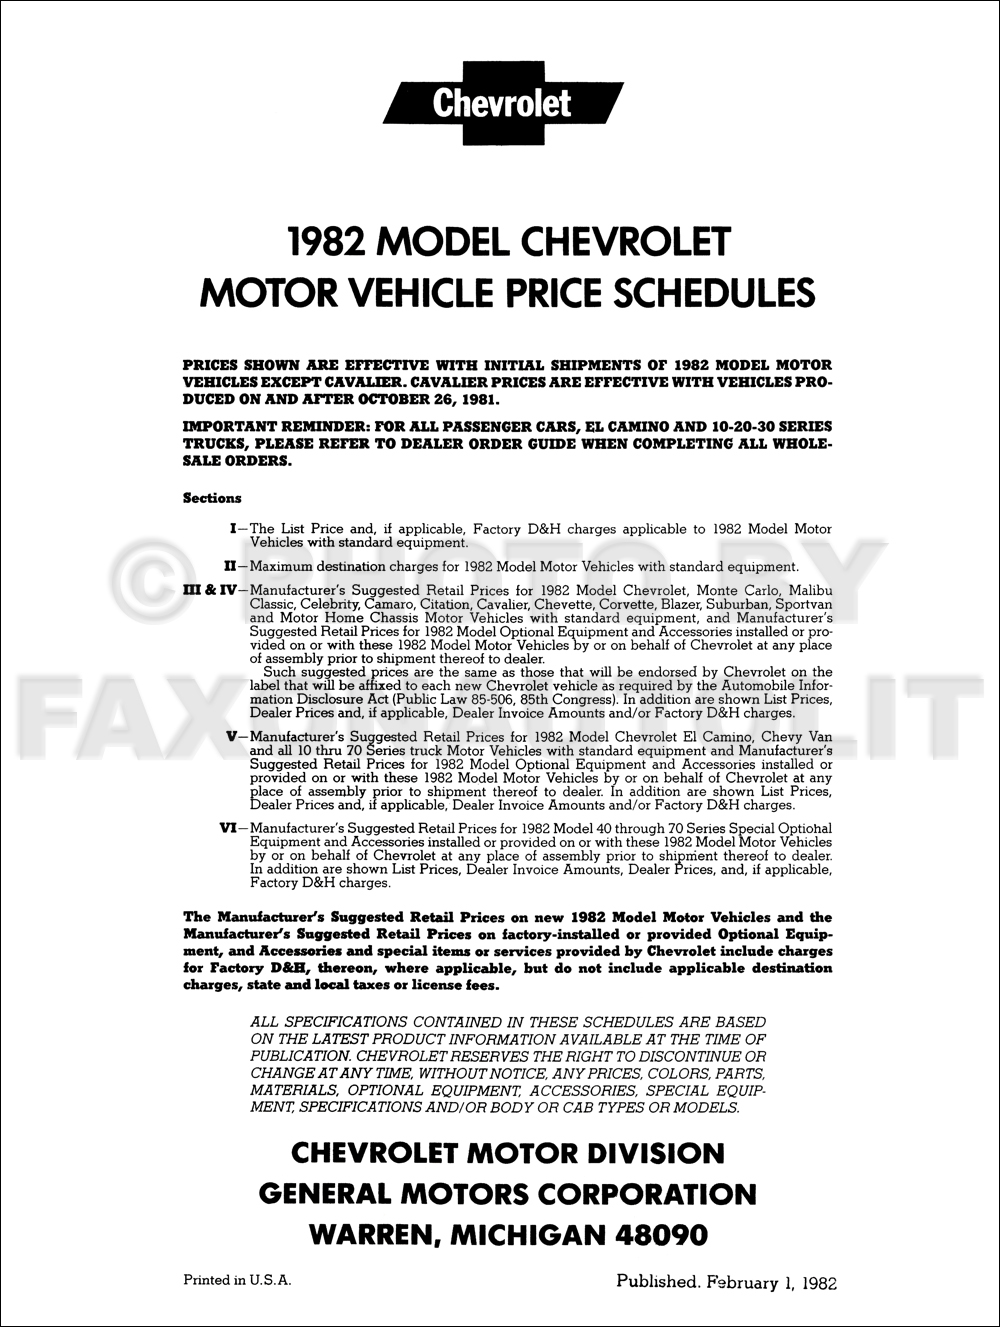 1982 Chevrolet Price Schedule Dealer Album Original